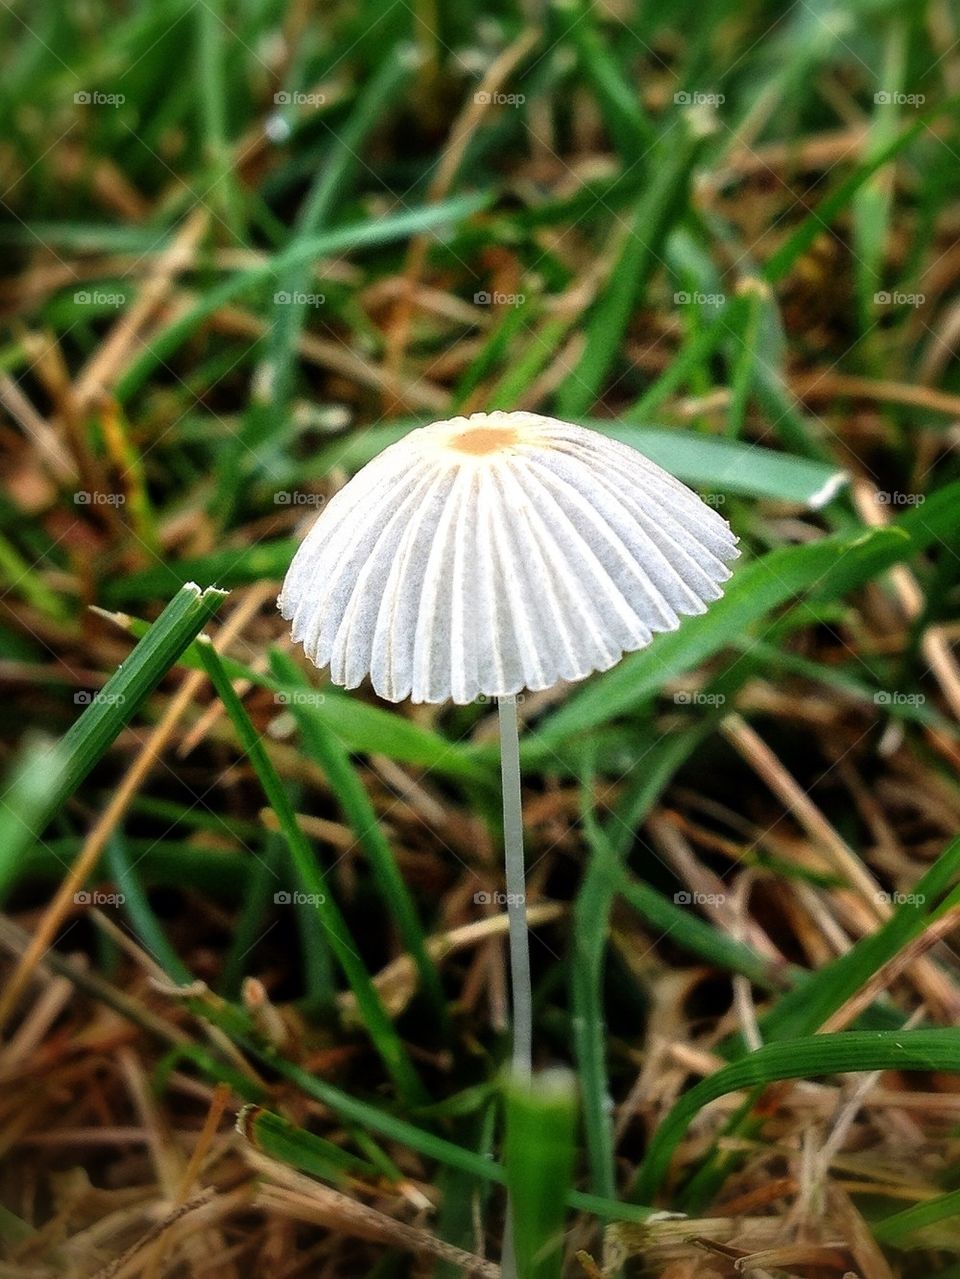 Tiny umbrella.